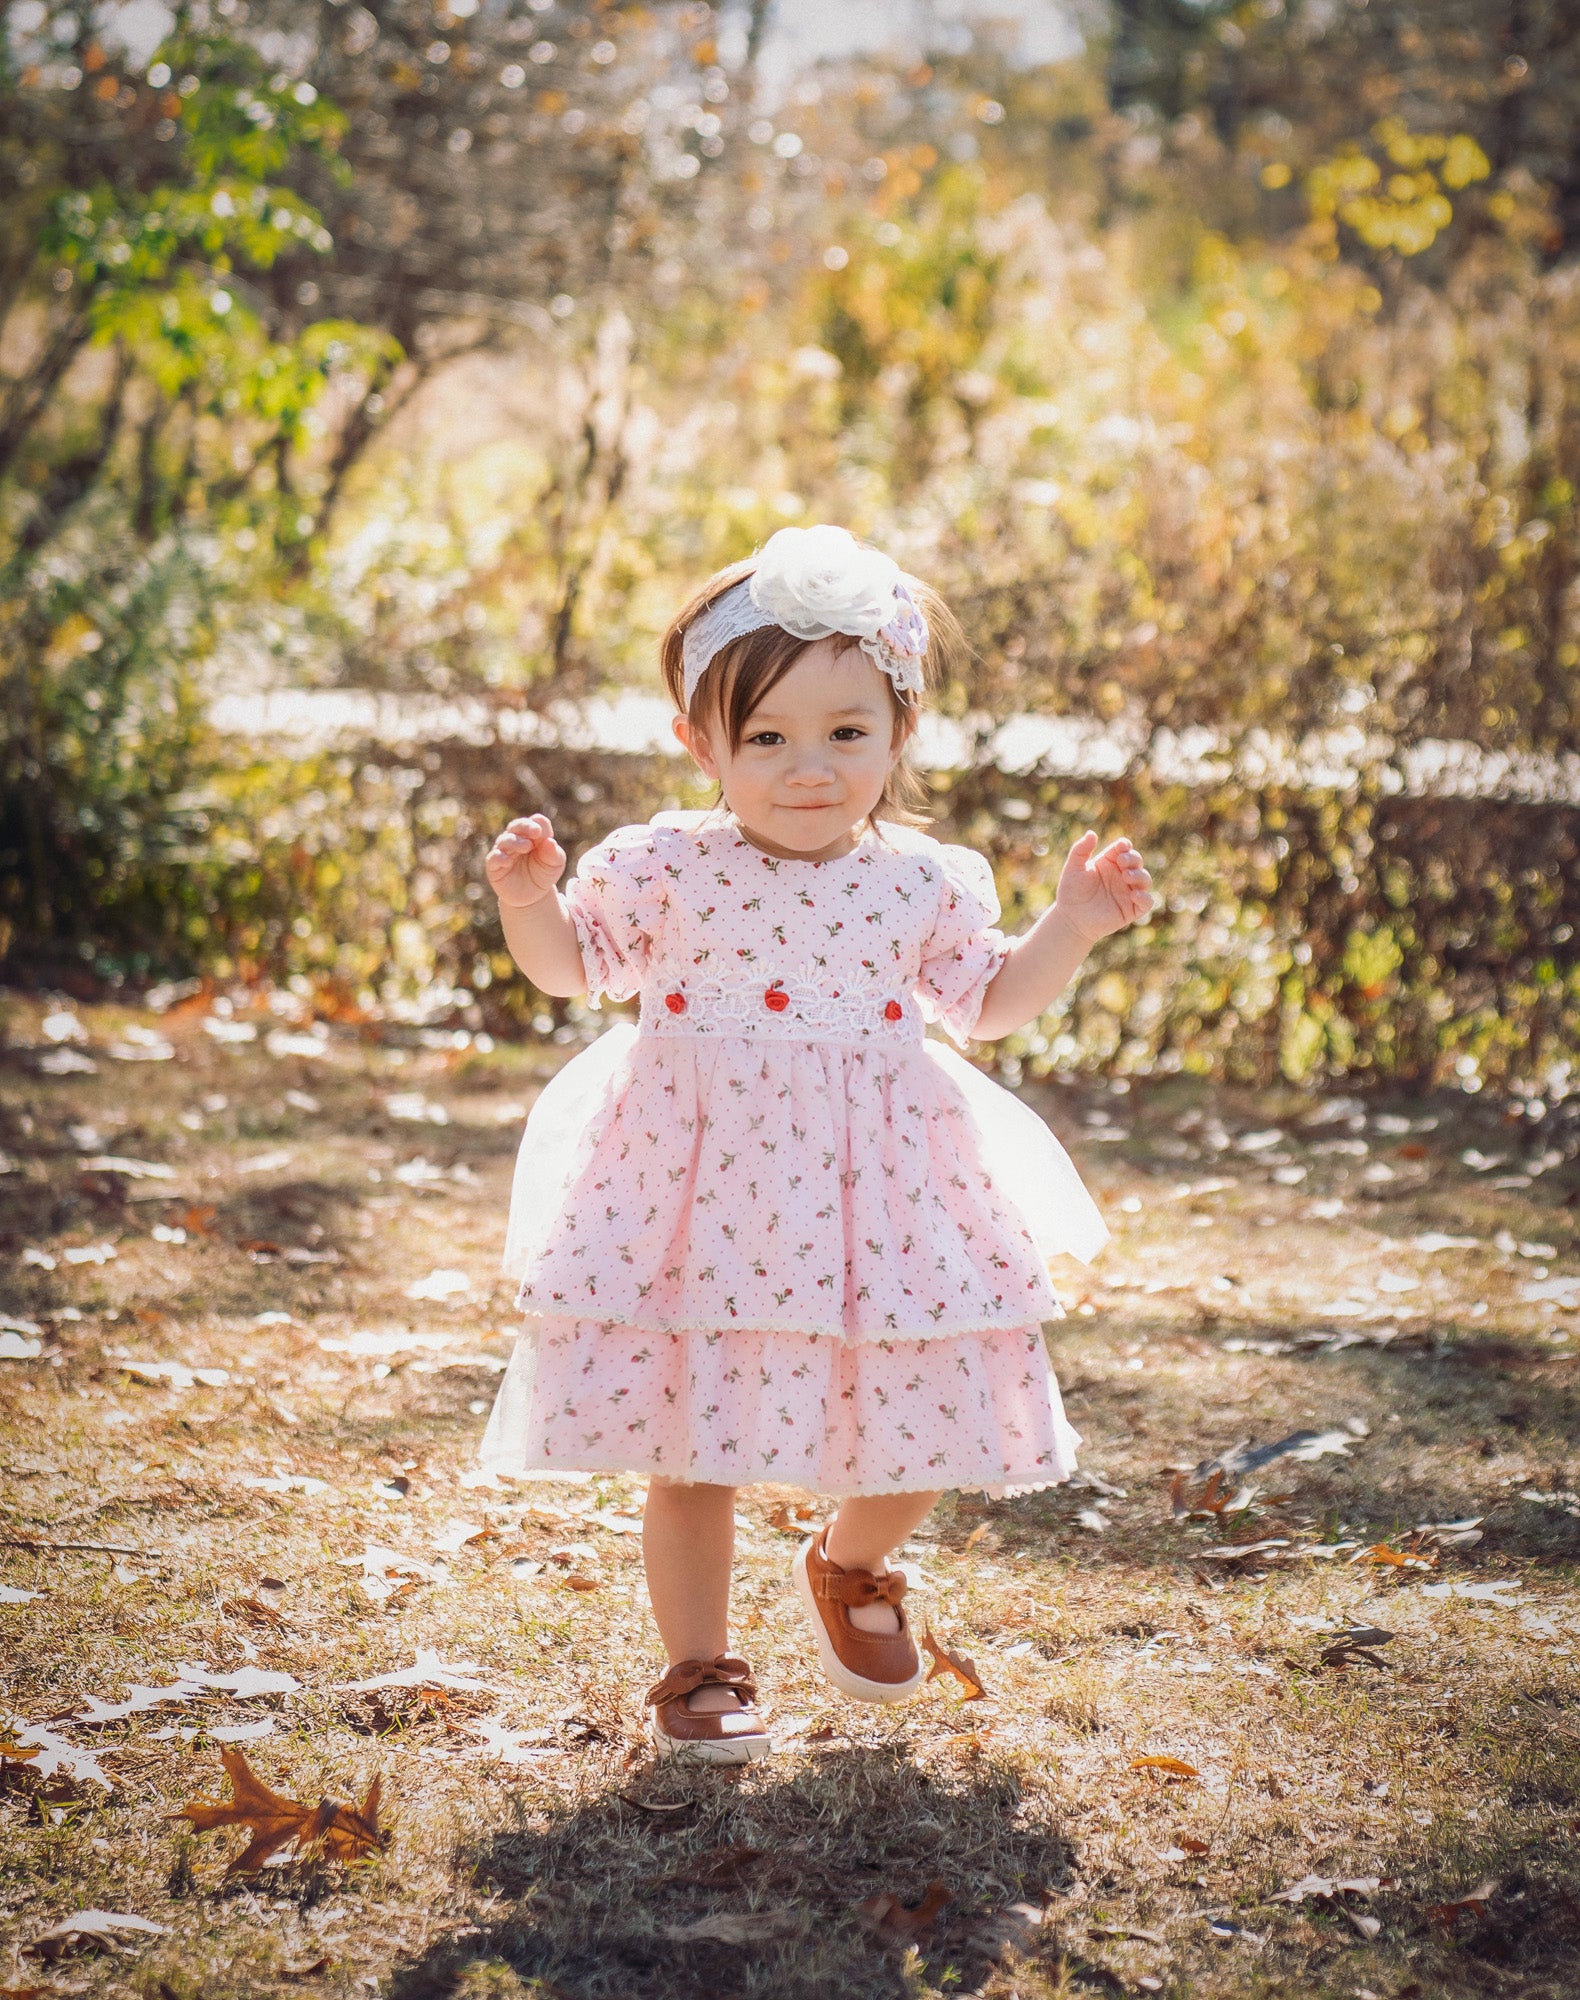 Petite Garden Baby Dress